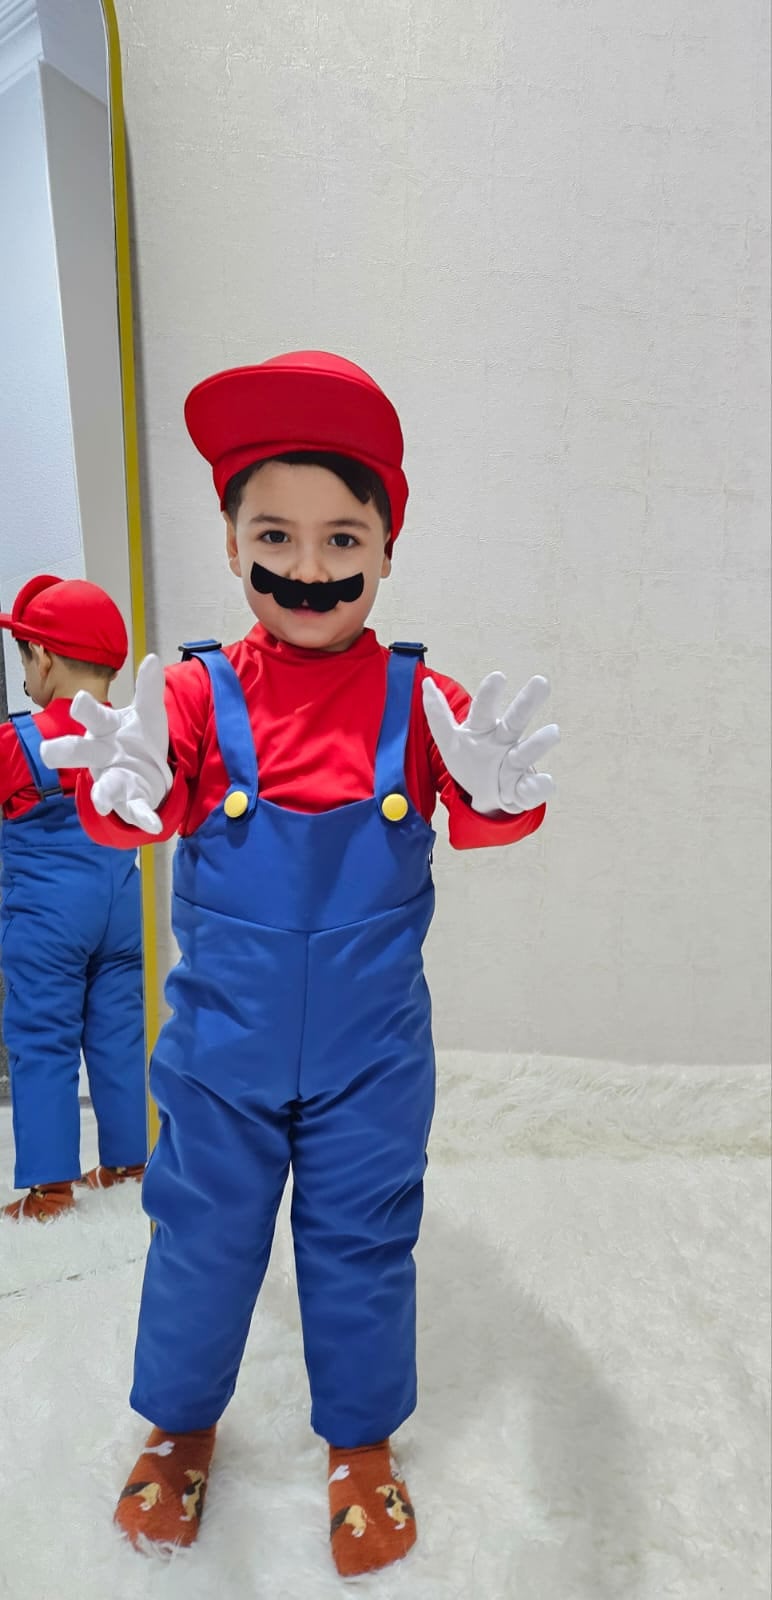 Super Mario and Luigi Costume for Kids, Kids Mario Costume, Toddler or Kids  Mario Character Cosplay Costume, Game Plumber Character Costume 